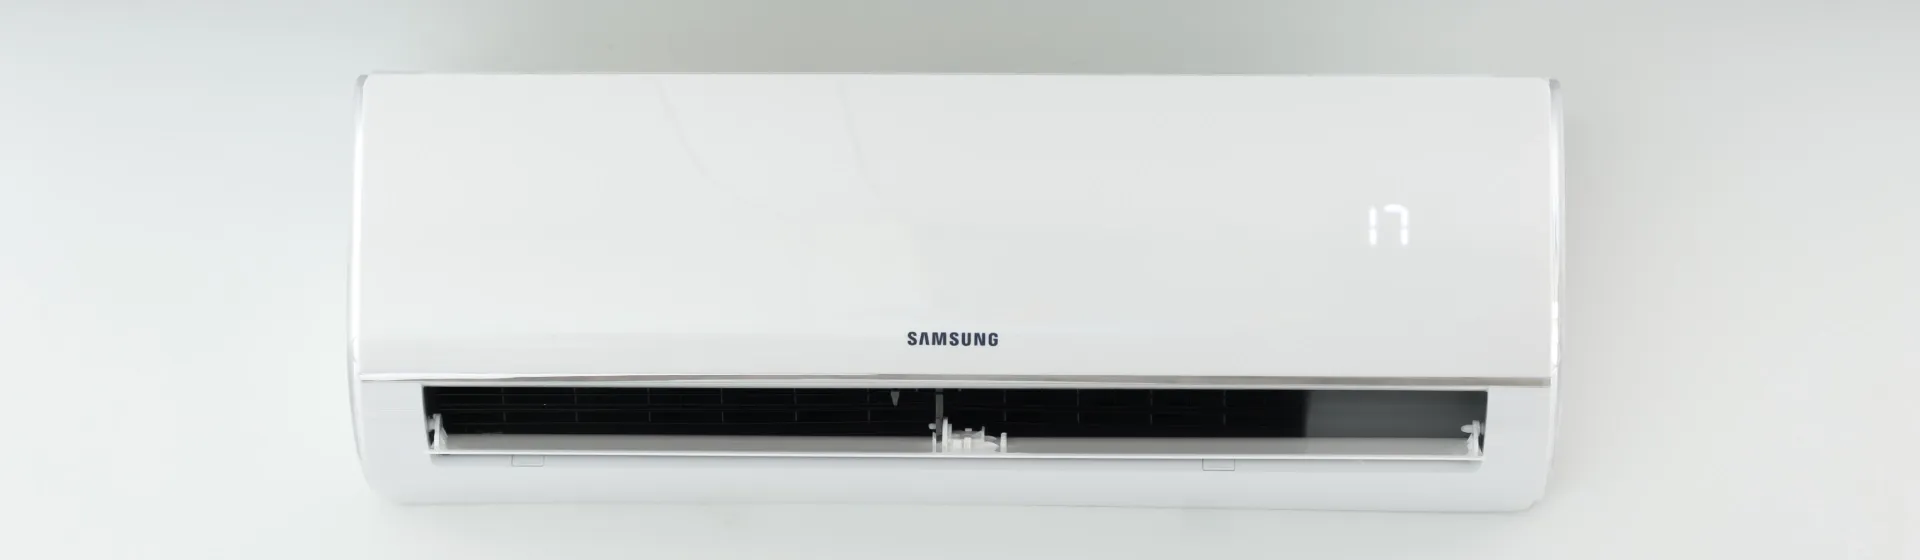 Saiba mais sobre o ar-condicionado Samsung ultra